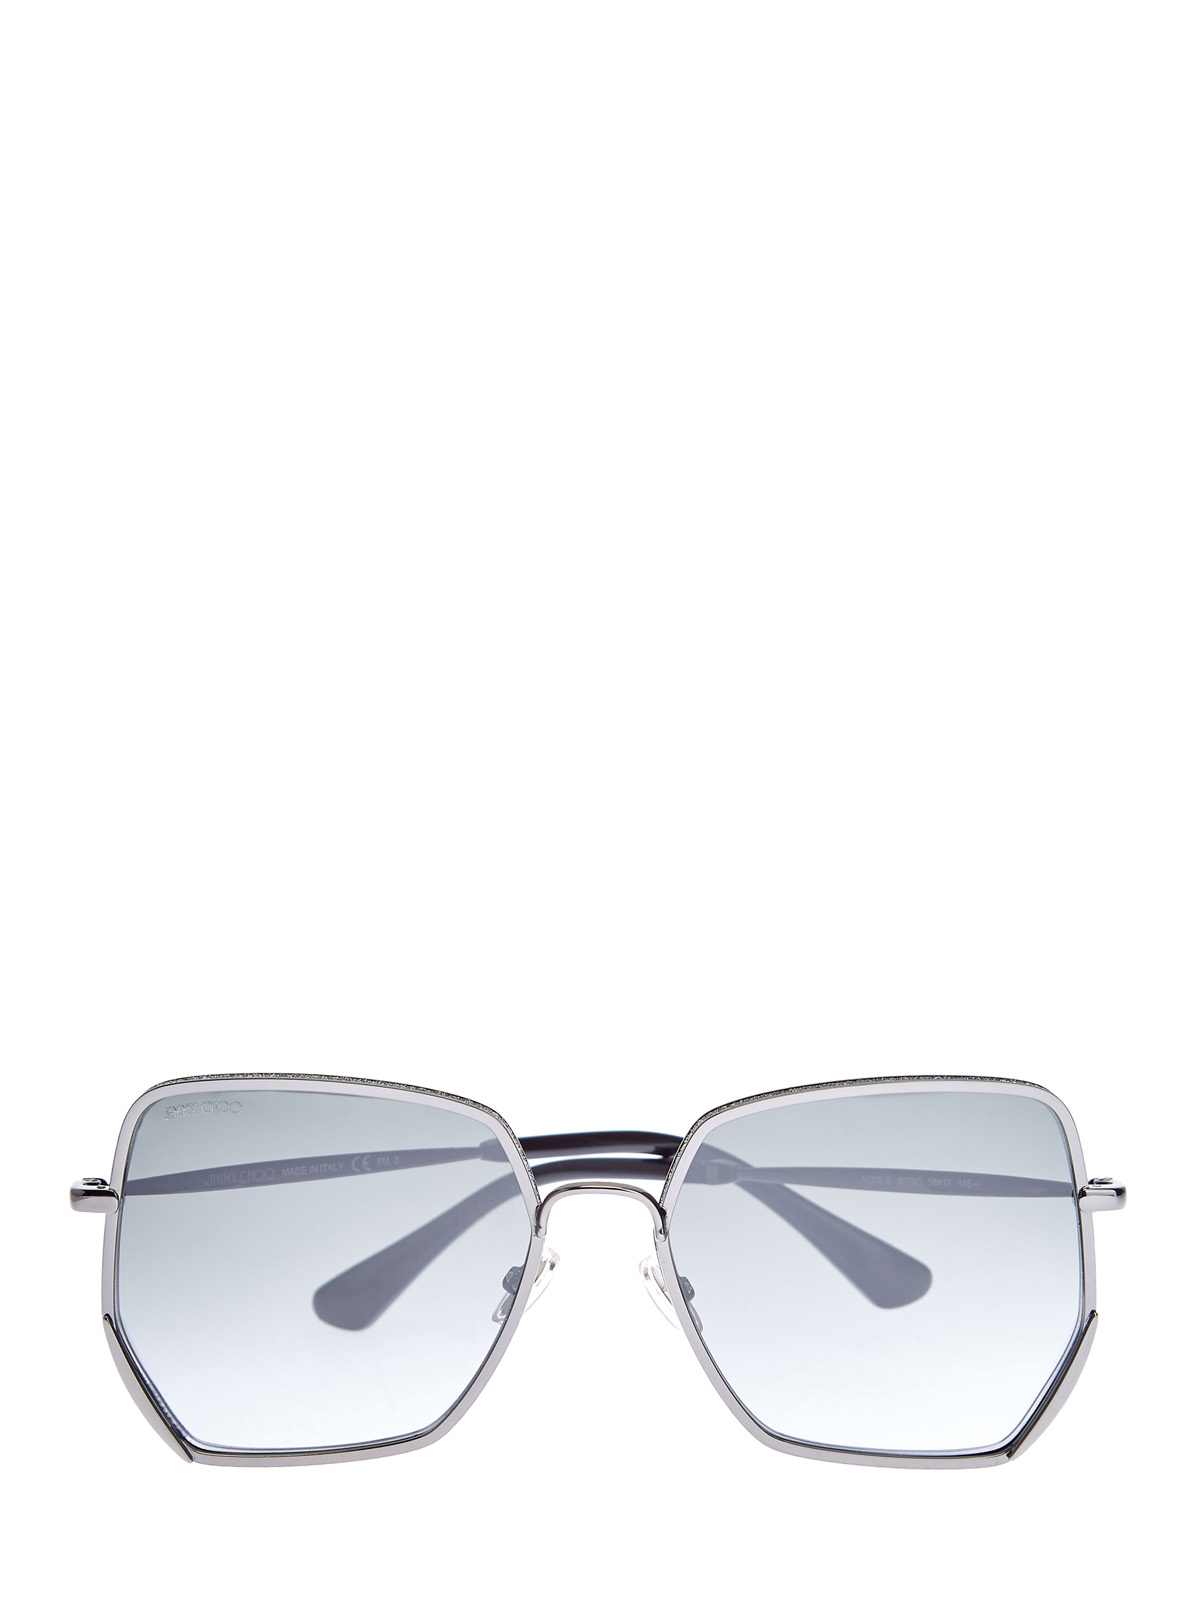 Очки Aline с металлической оправой и мерцающим напылением JIMMY CHOO  (sunglasses), цвет серый, размер S;M;L